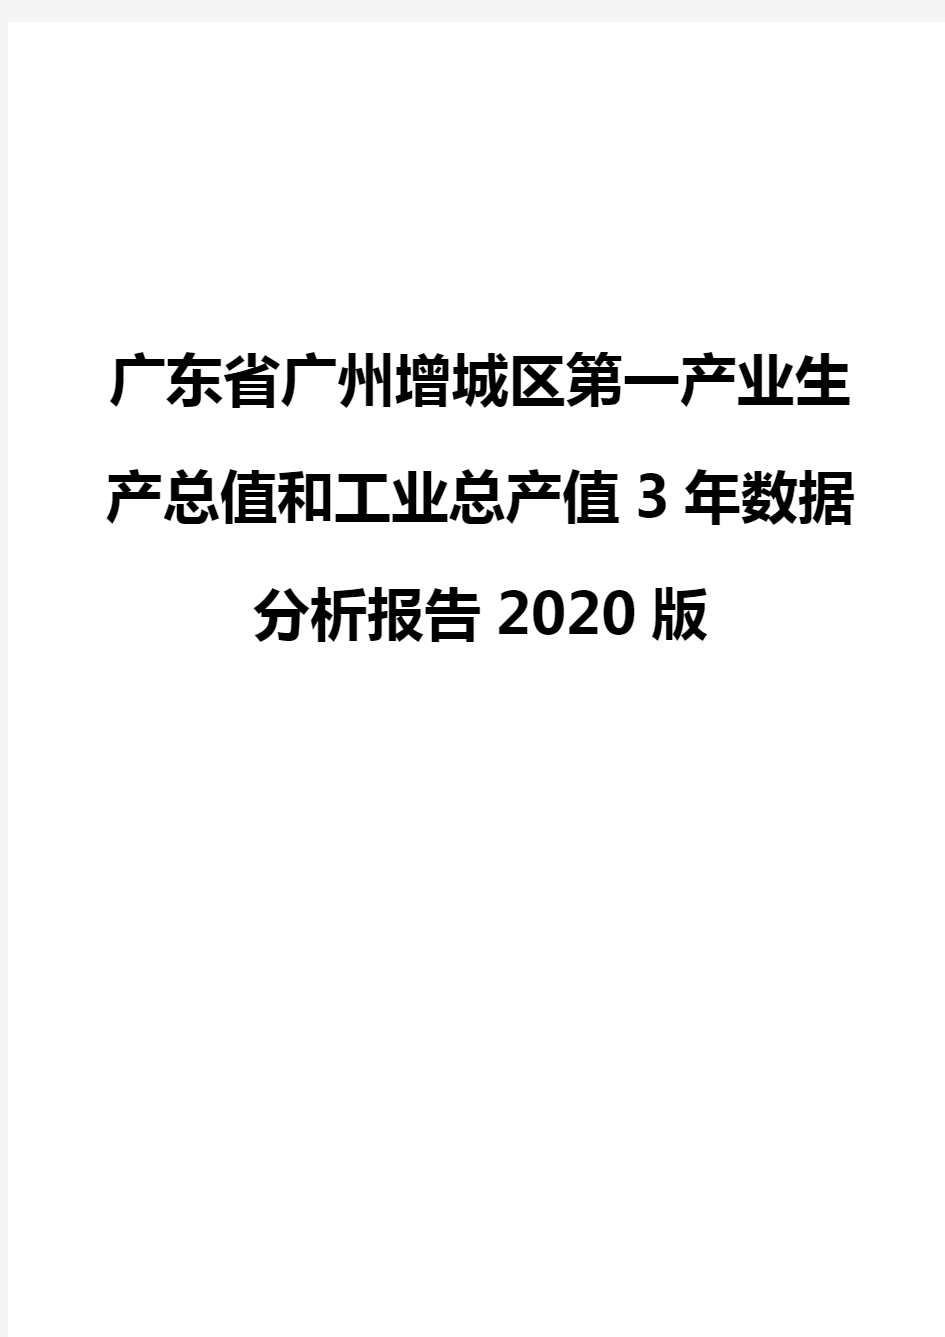 广东省广州增城区第一产业生产总值和工业总产值3年数据分析报告2020版